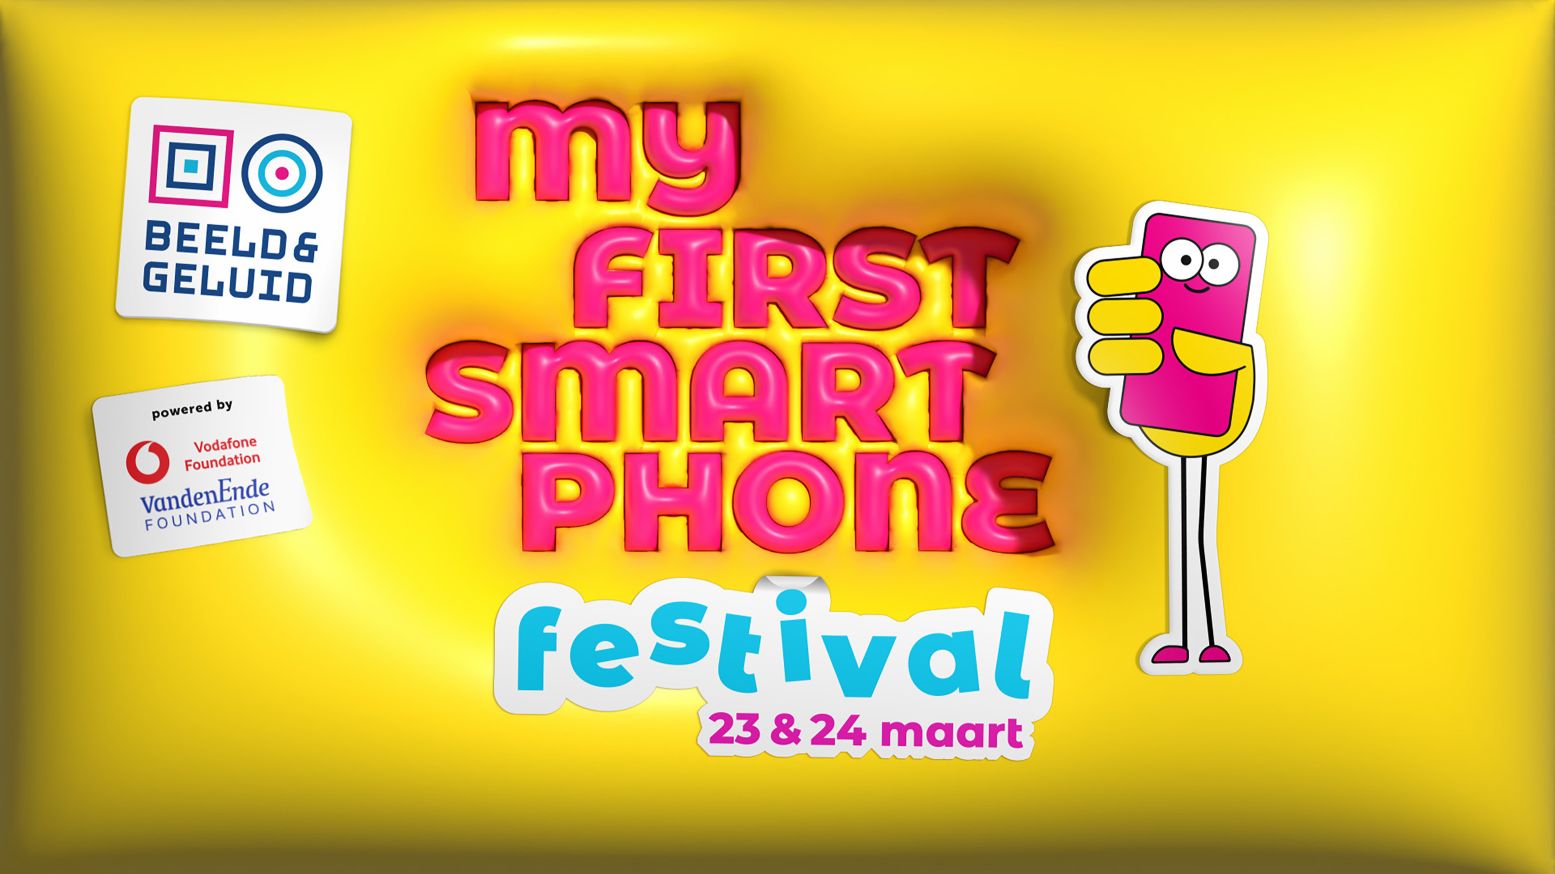 Alles over de smartphone tijdens een vet festival. Poster: Beeld & Geluid